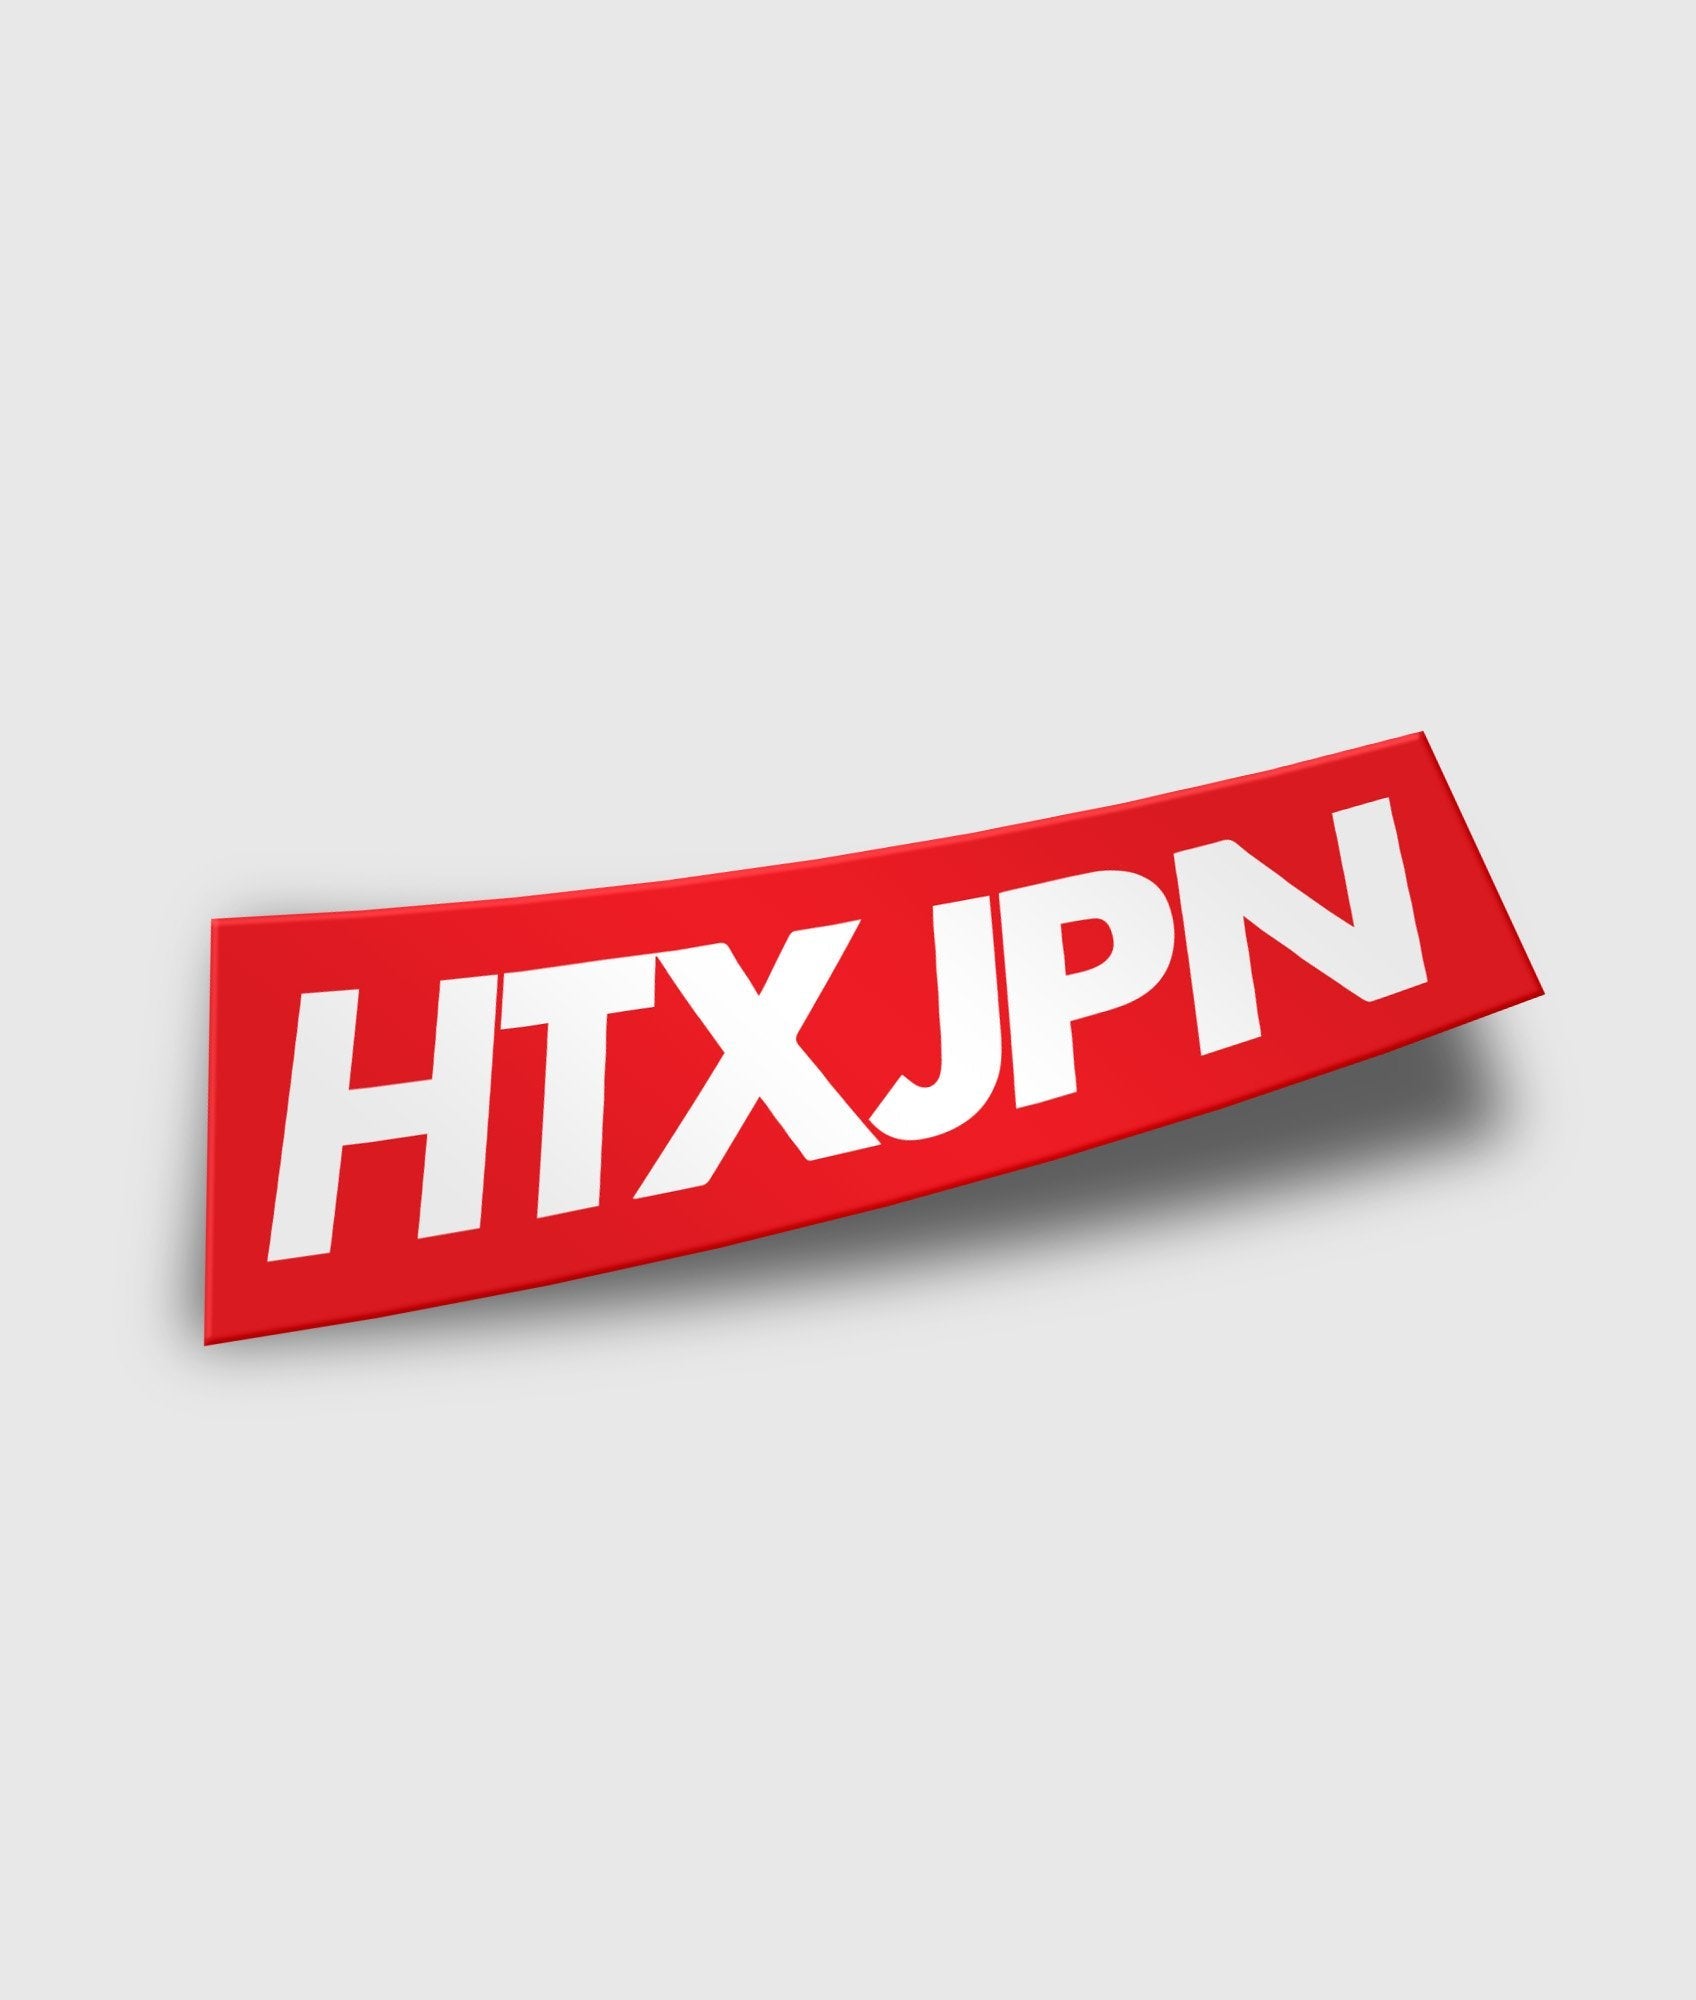 HTXJPN Classic Slap - Hardtuned